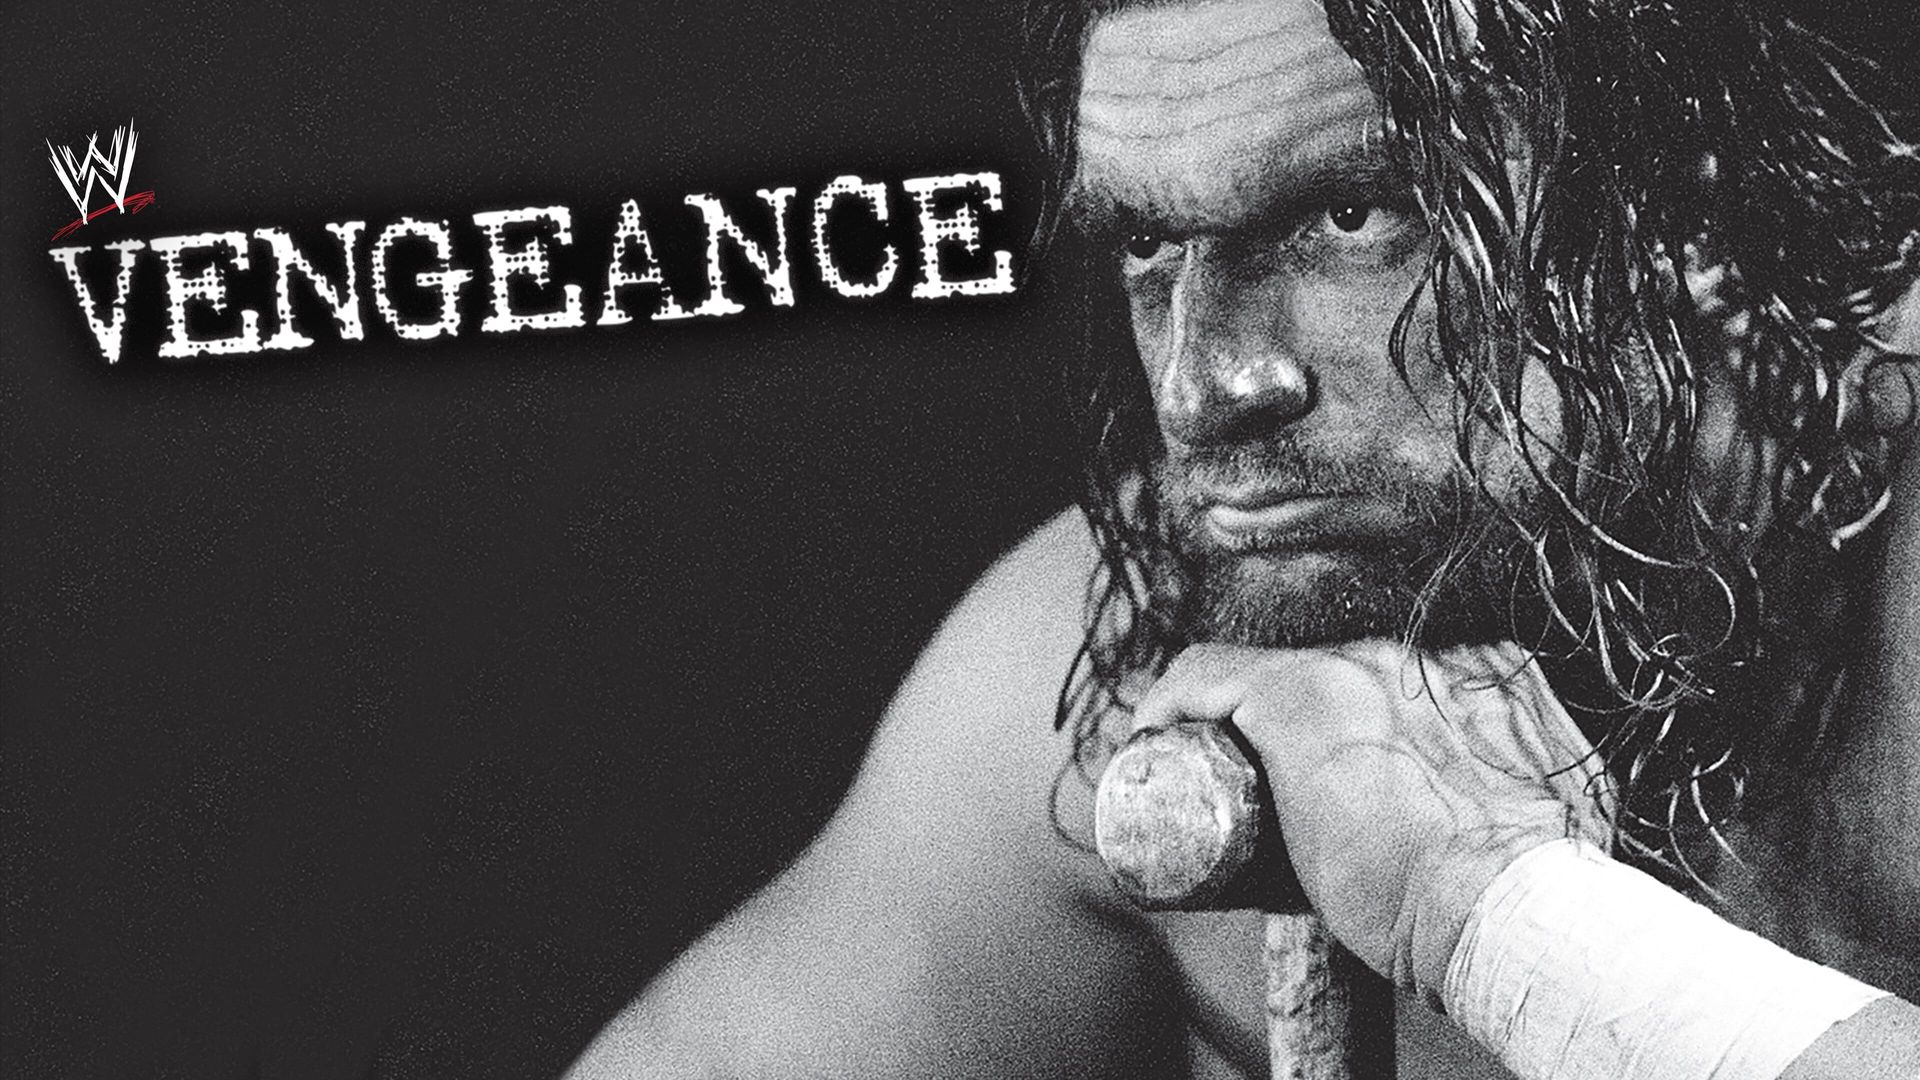 WWF Vengeance background